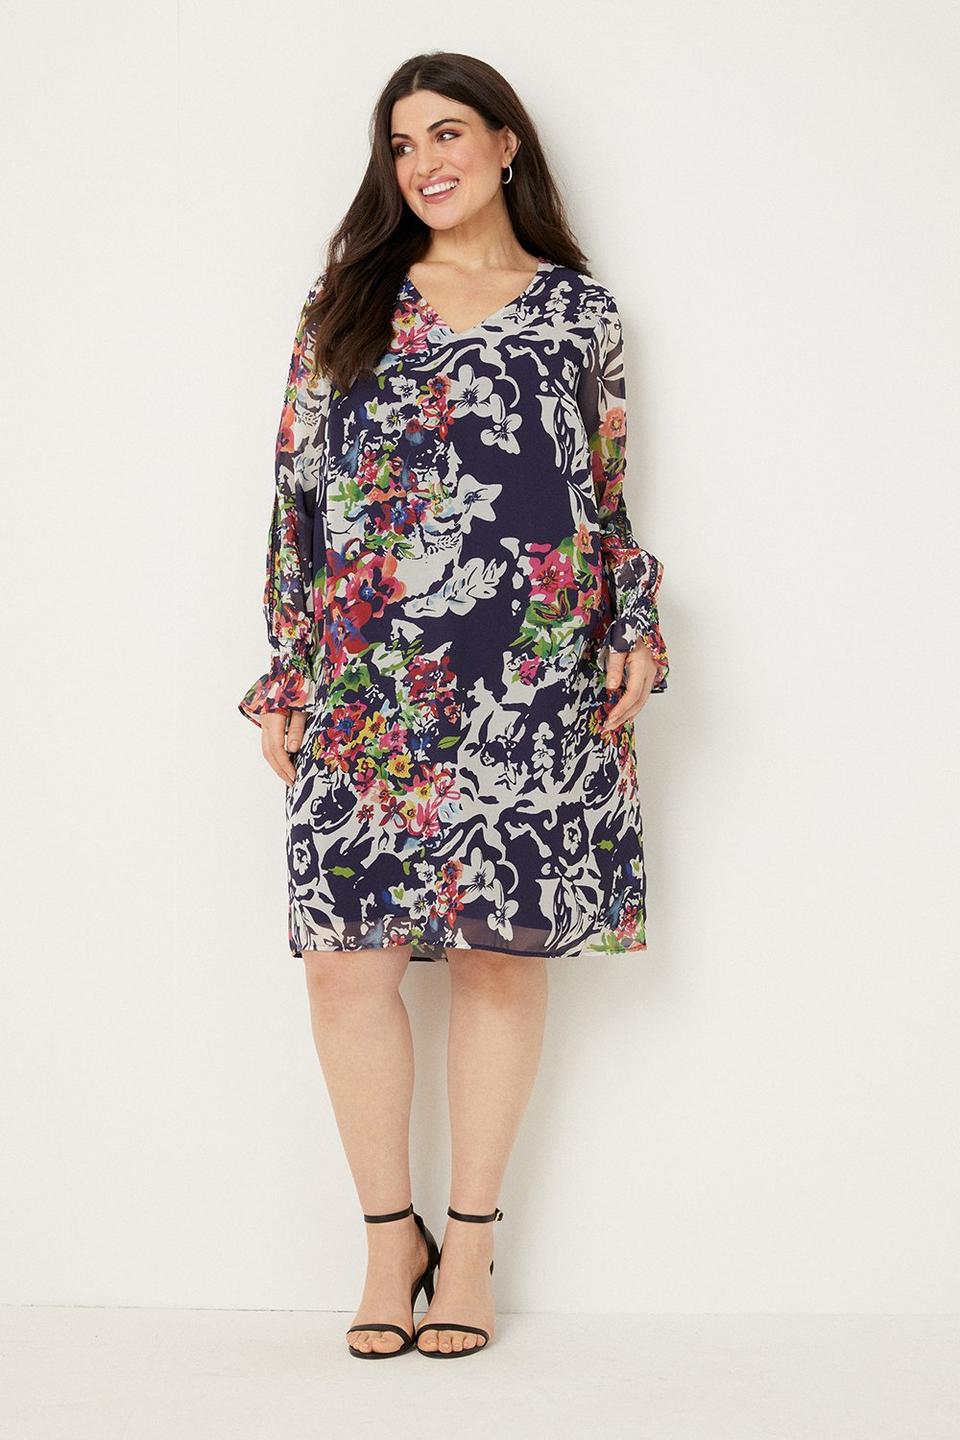 Dresses | Curve Multi Floral Lace Trim Shift Dress | Wallis